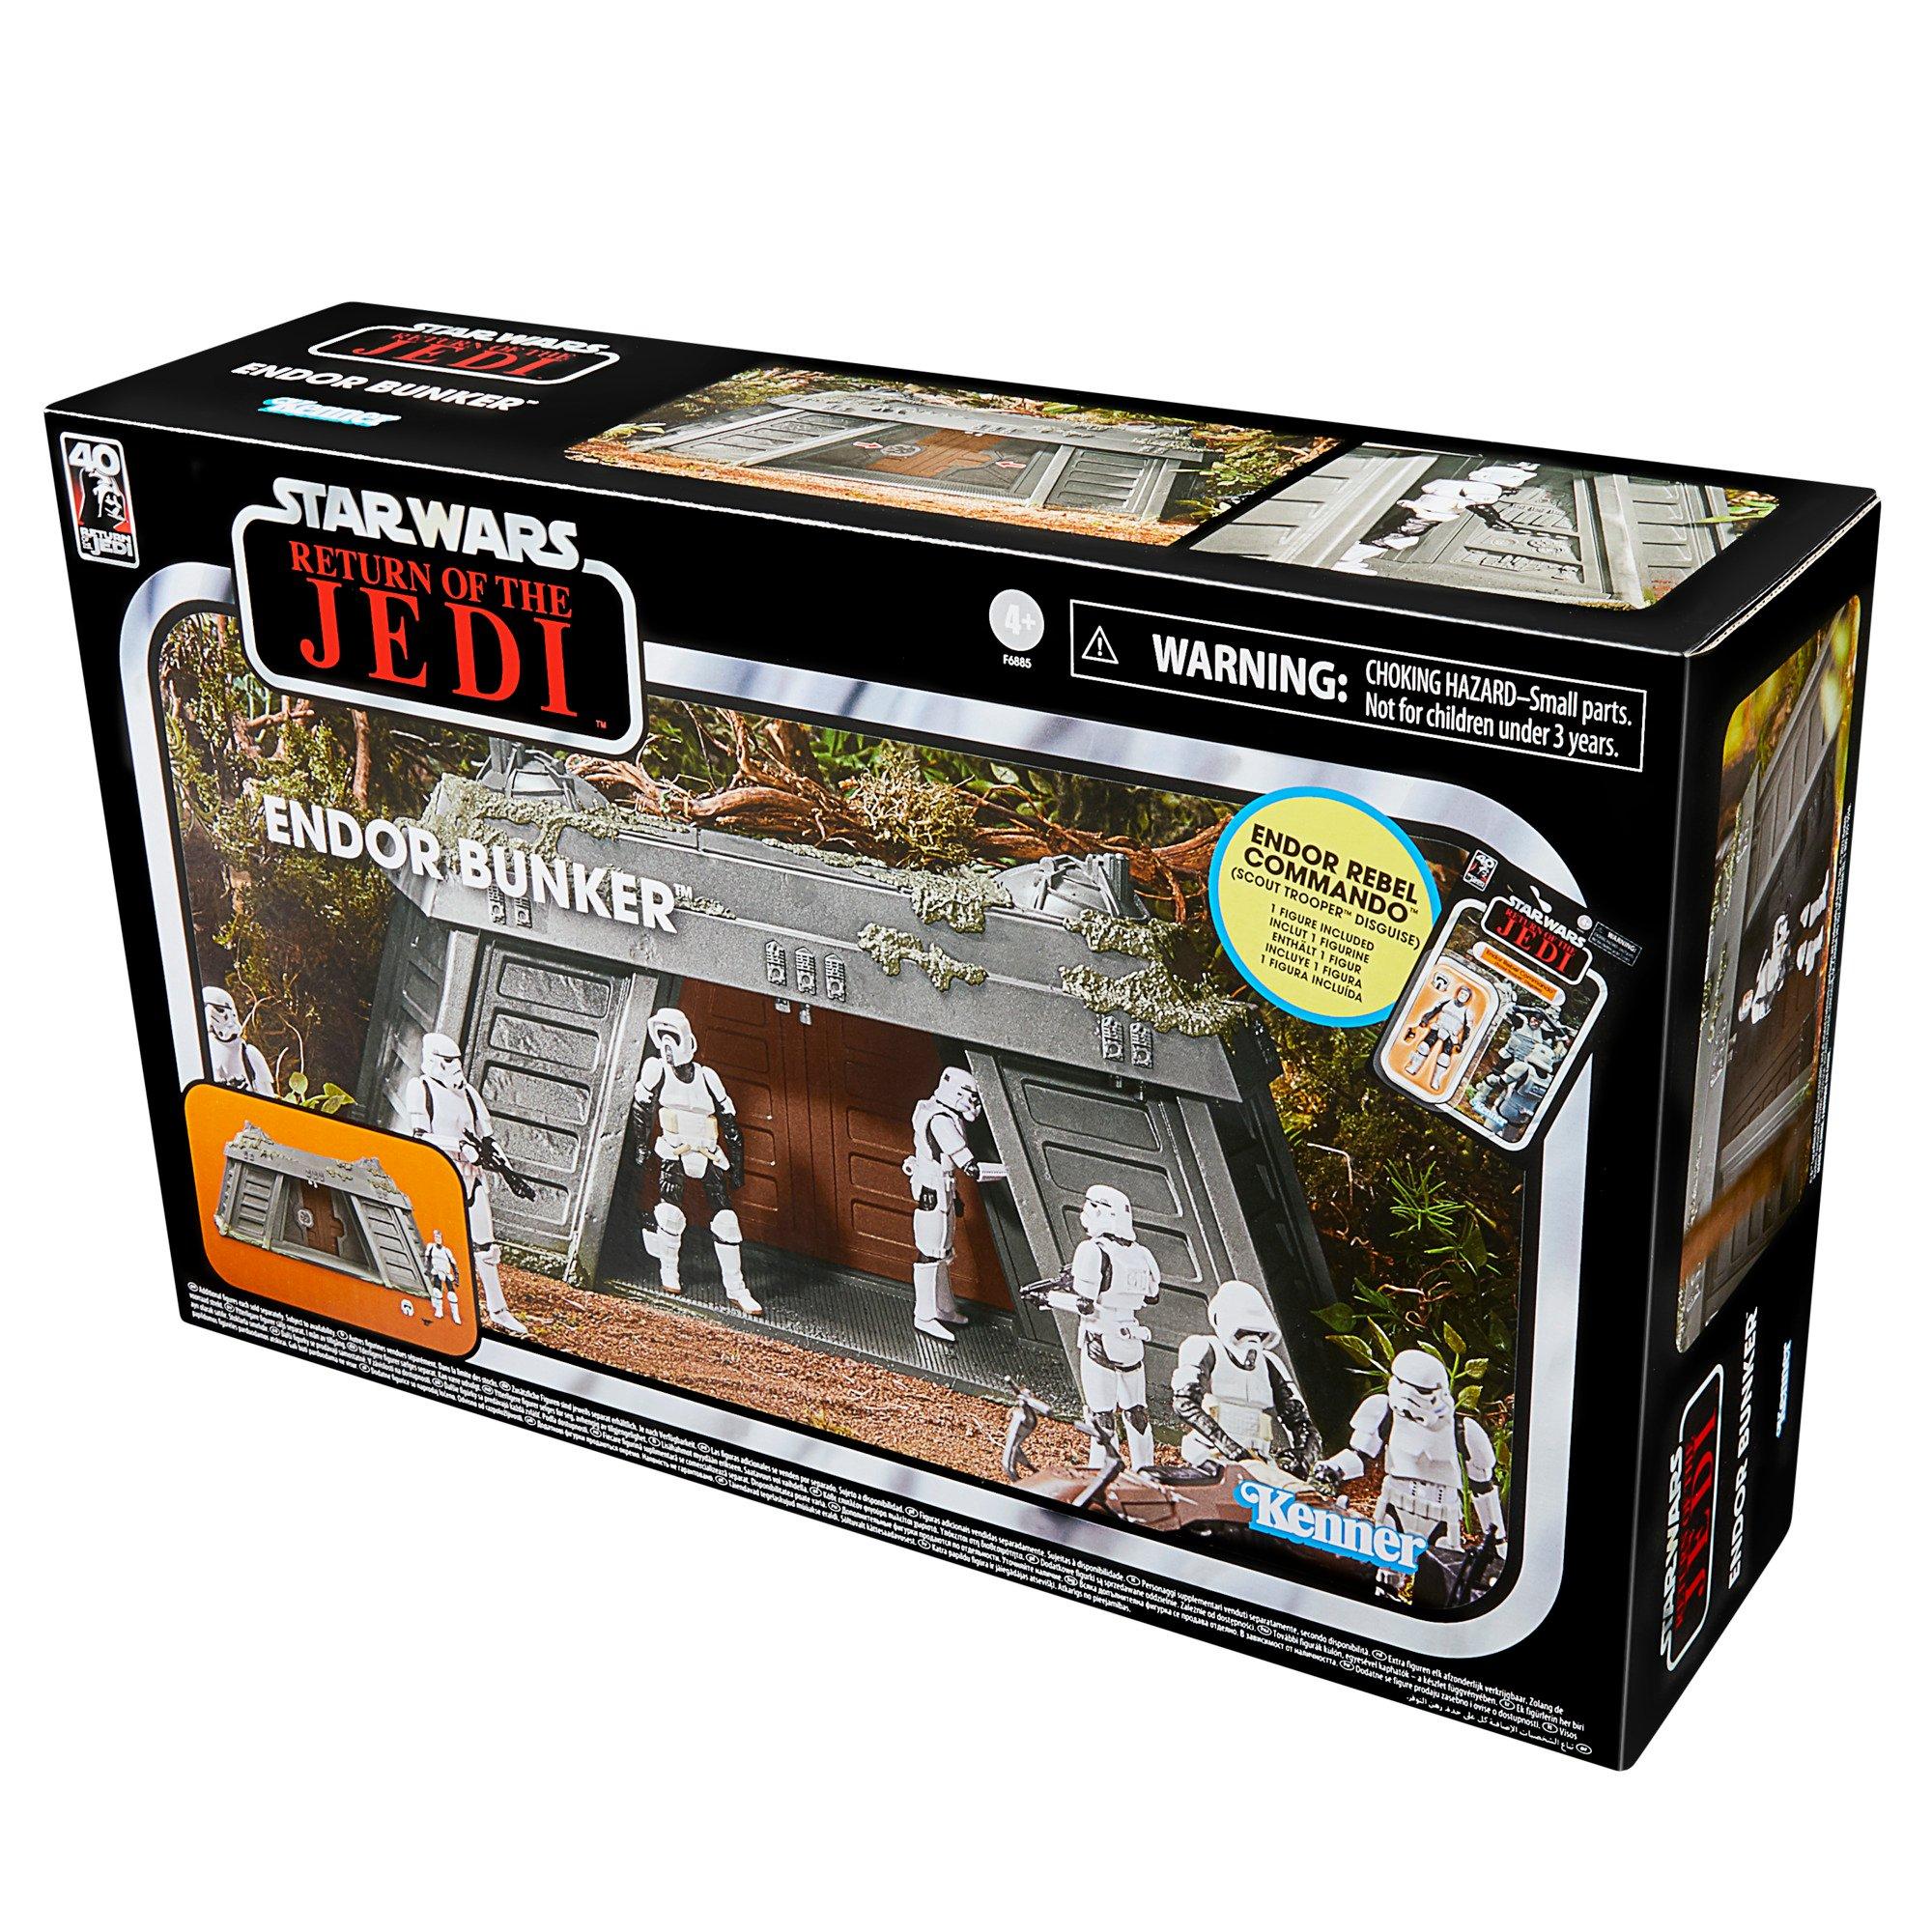 https://media.gamestop.com/i/gamestop/20002279_ALT22/Hasbro-Star-Wars-The-Vintage-Collection-Star-Wars-Return-of-the-Jedi-Endor-Bunker-Playset?$pdp$